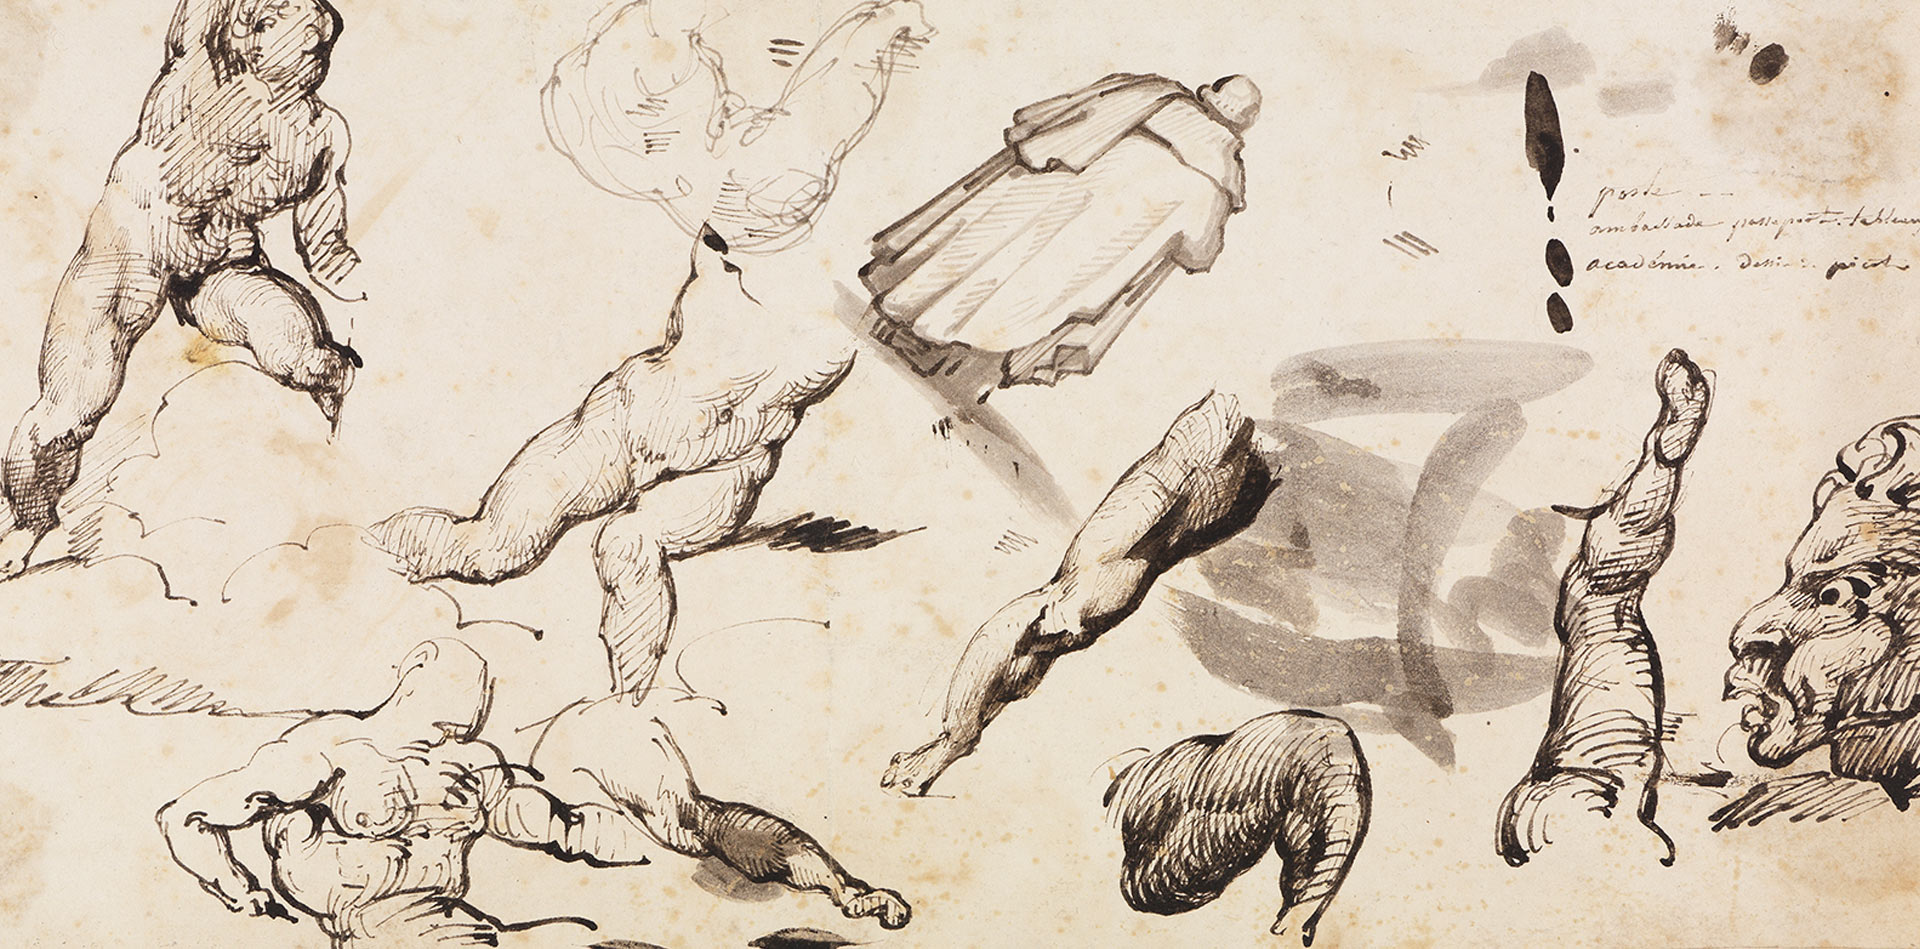 Auf der Abbildung des Studienblattes von Théodore Géricault sind verschiedene Skizzen und Studien von Körperteilen zu sehen.